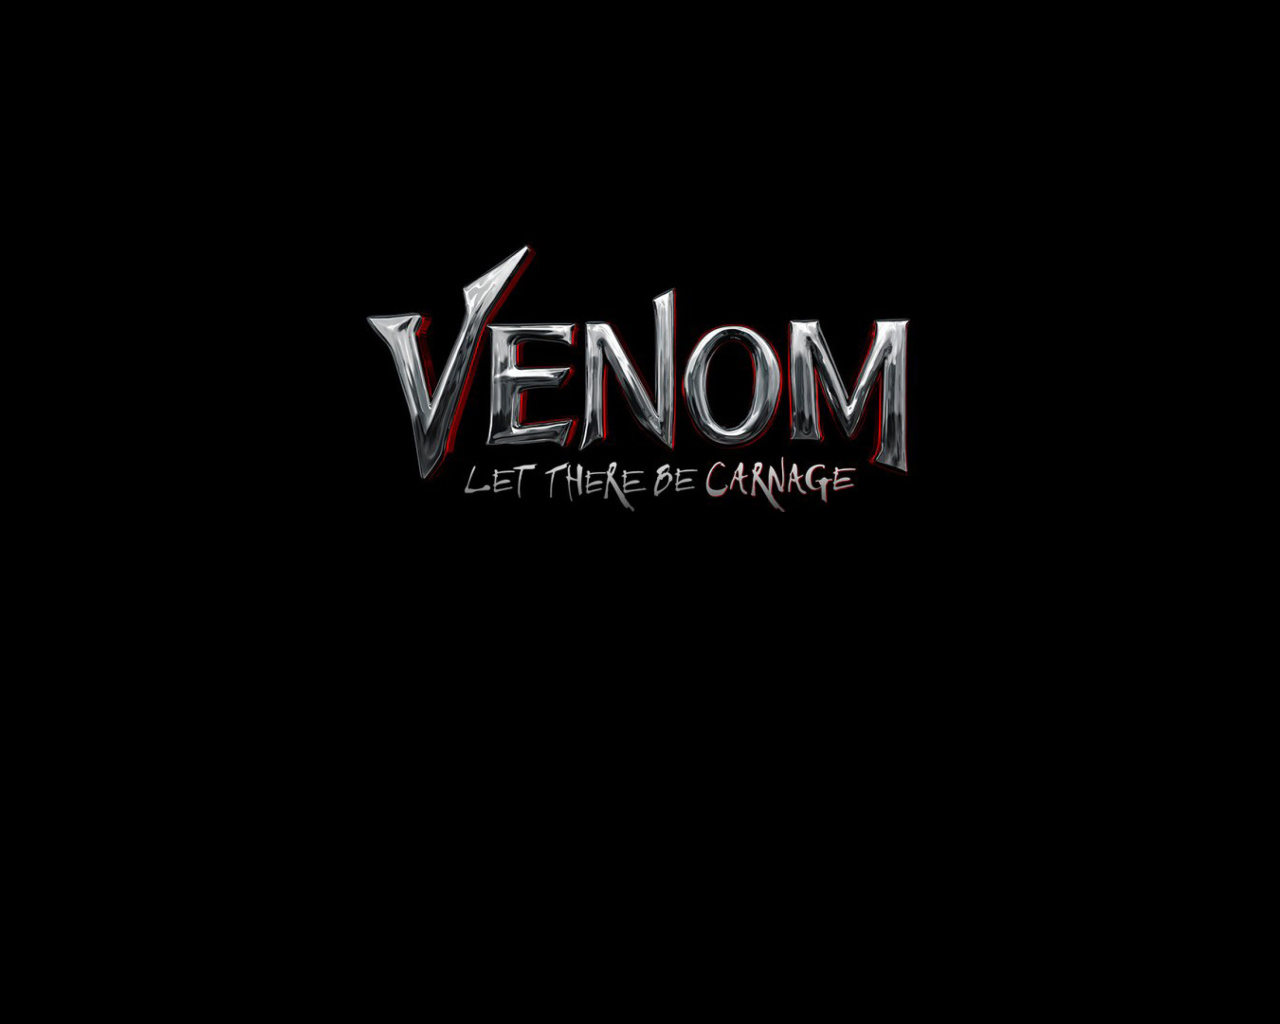 Логотип фильма Веном 2 на черном фоне